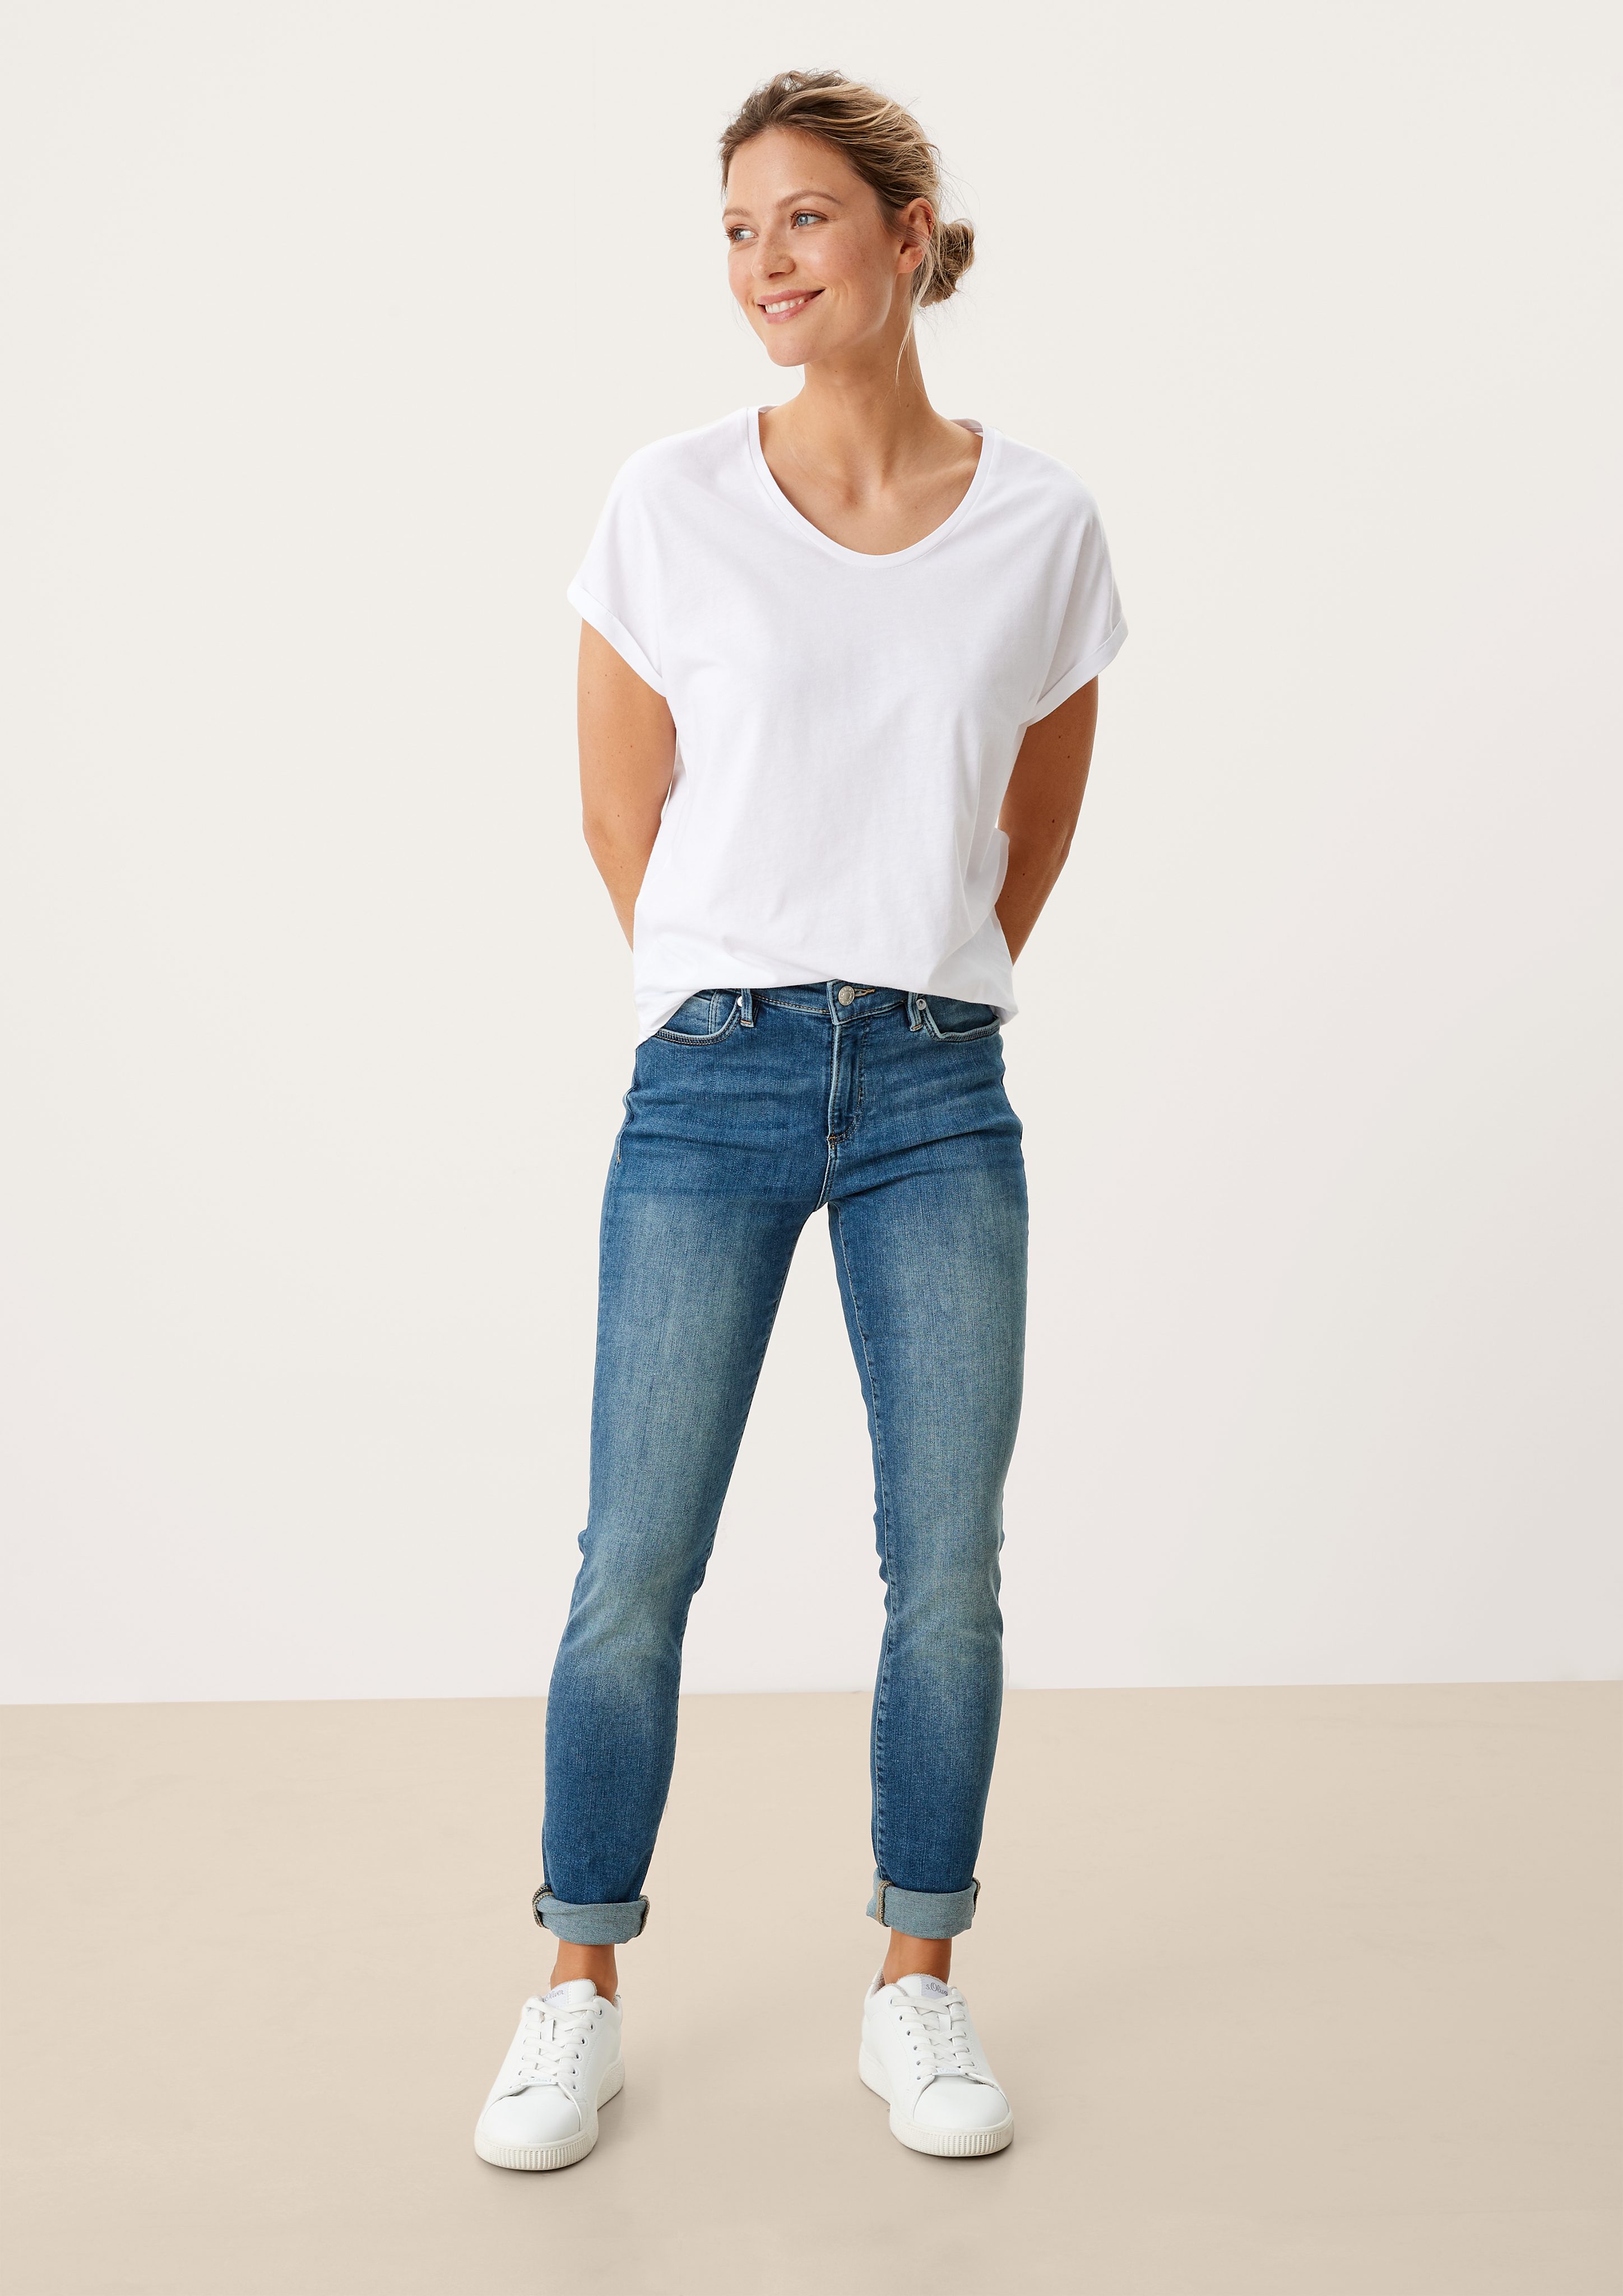 s.Oliver 5-Pocket-Jeans Jeans Izabell / medium Waschung Leder-Patch, blue Skinny Leg Rise / Mid Fit / Skinny